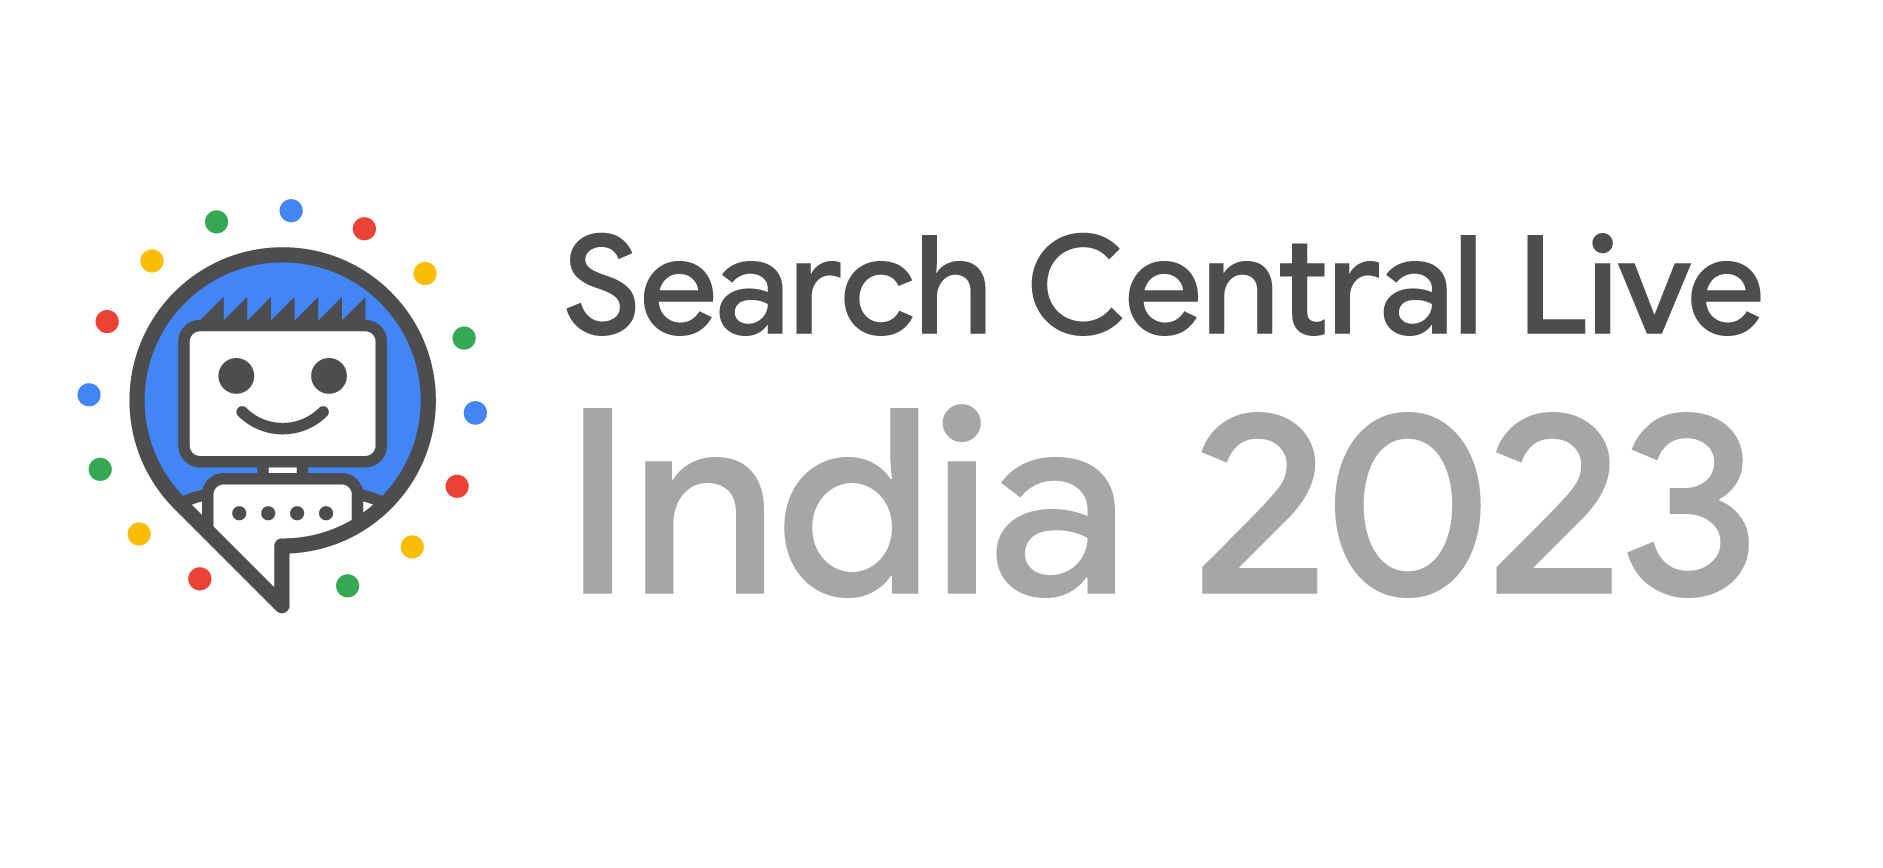 في الهند لعام 2023 Search Central Live فعالية